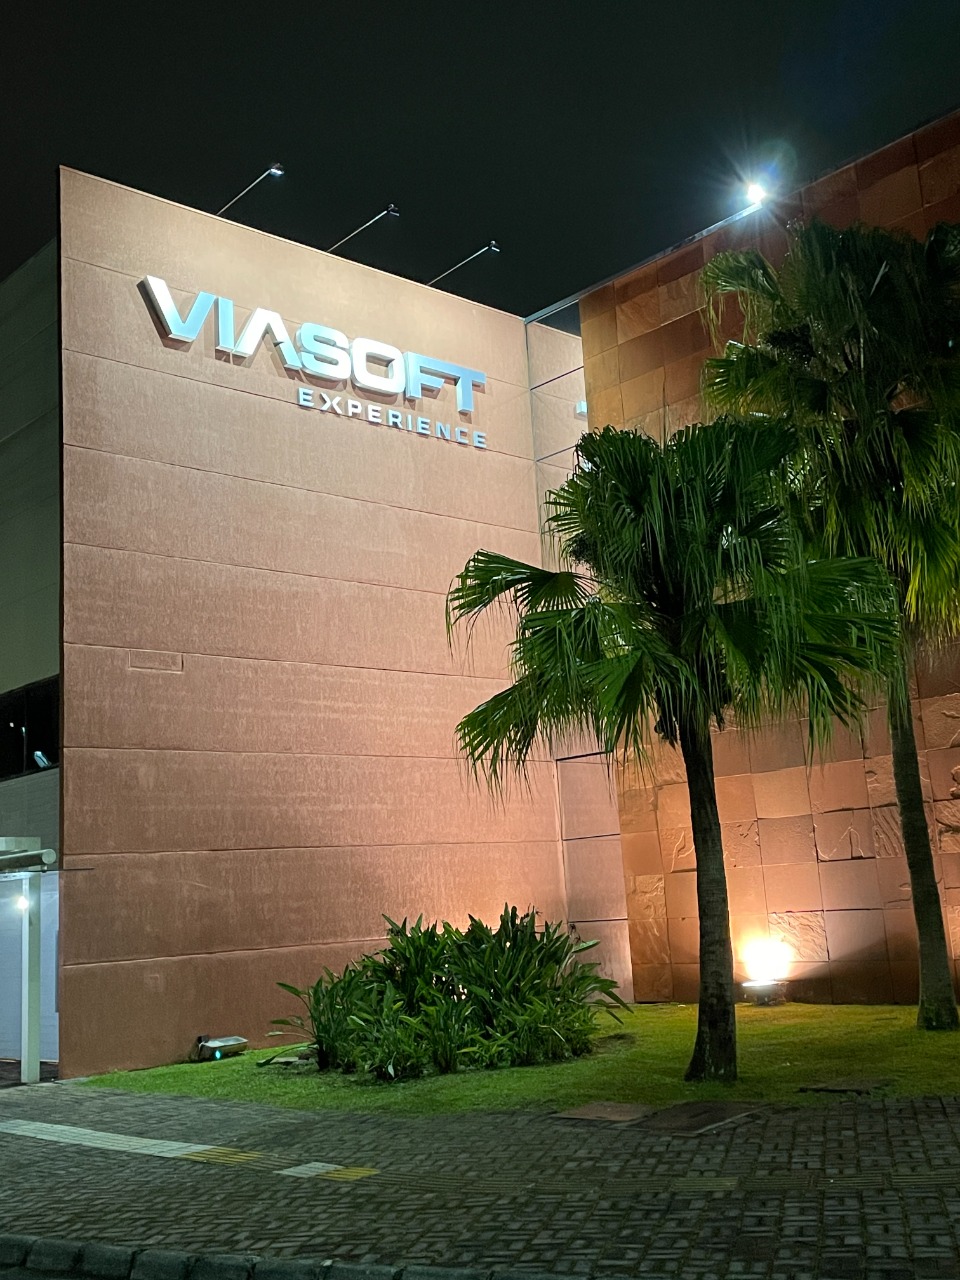 Expo Unimed cambia de nombre en Curitiba y ahora es Viasoft Experience